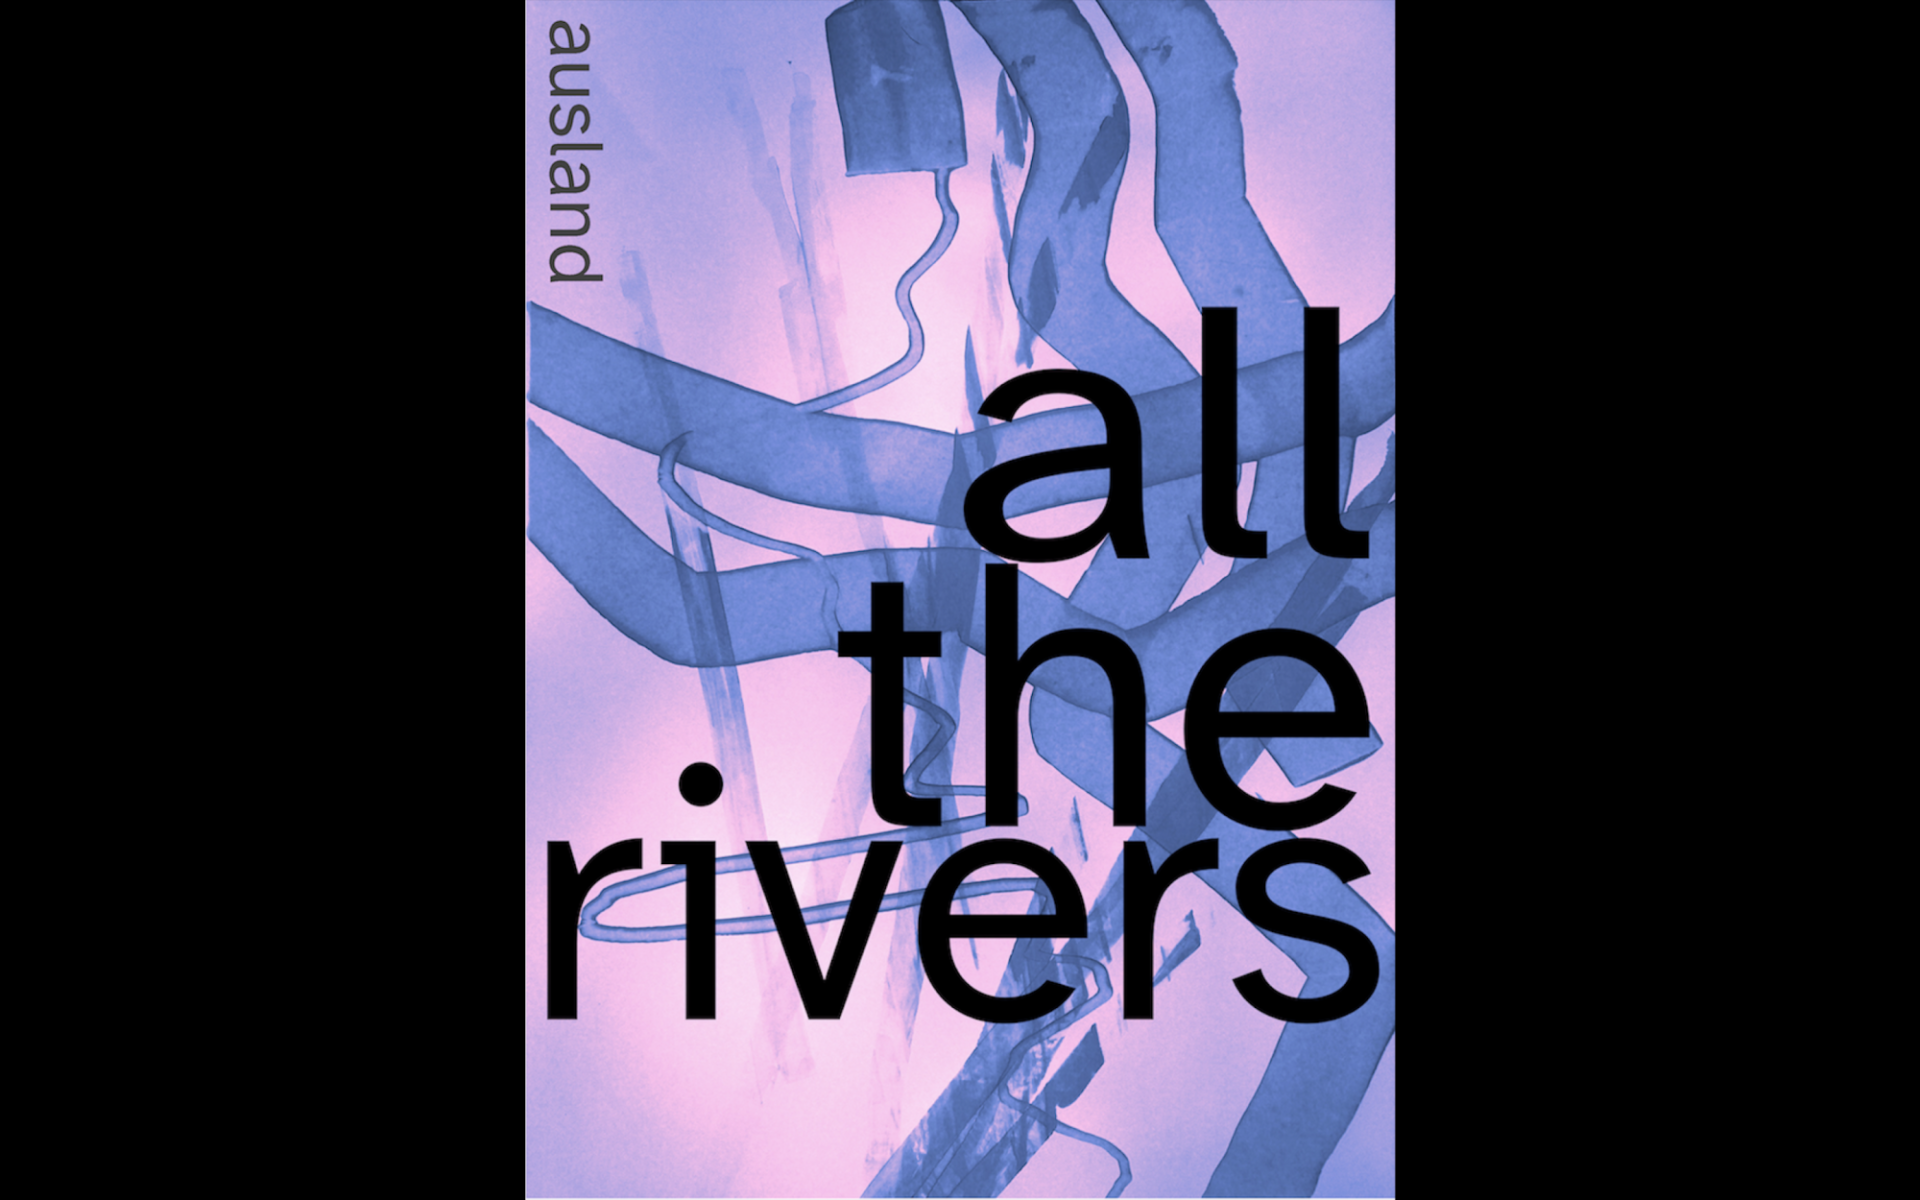 »all the rivers« steht in großen schwarzen Buchstaben präsent im Bild. Auf dem rosa Hintergrund sind blaue abstrakte Muster.